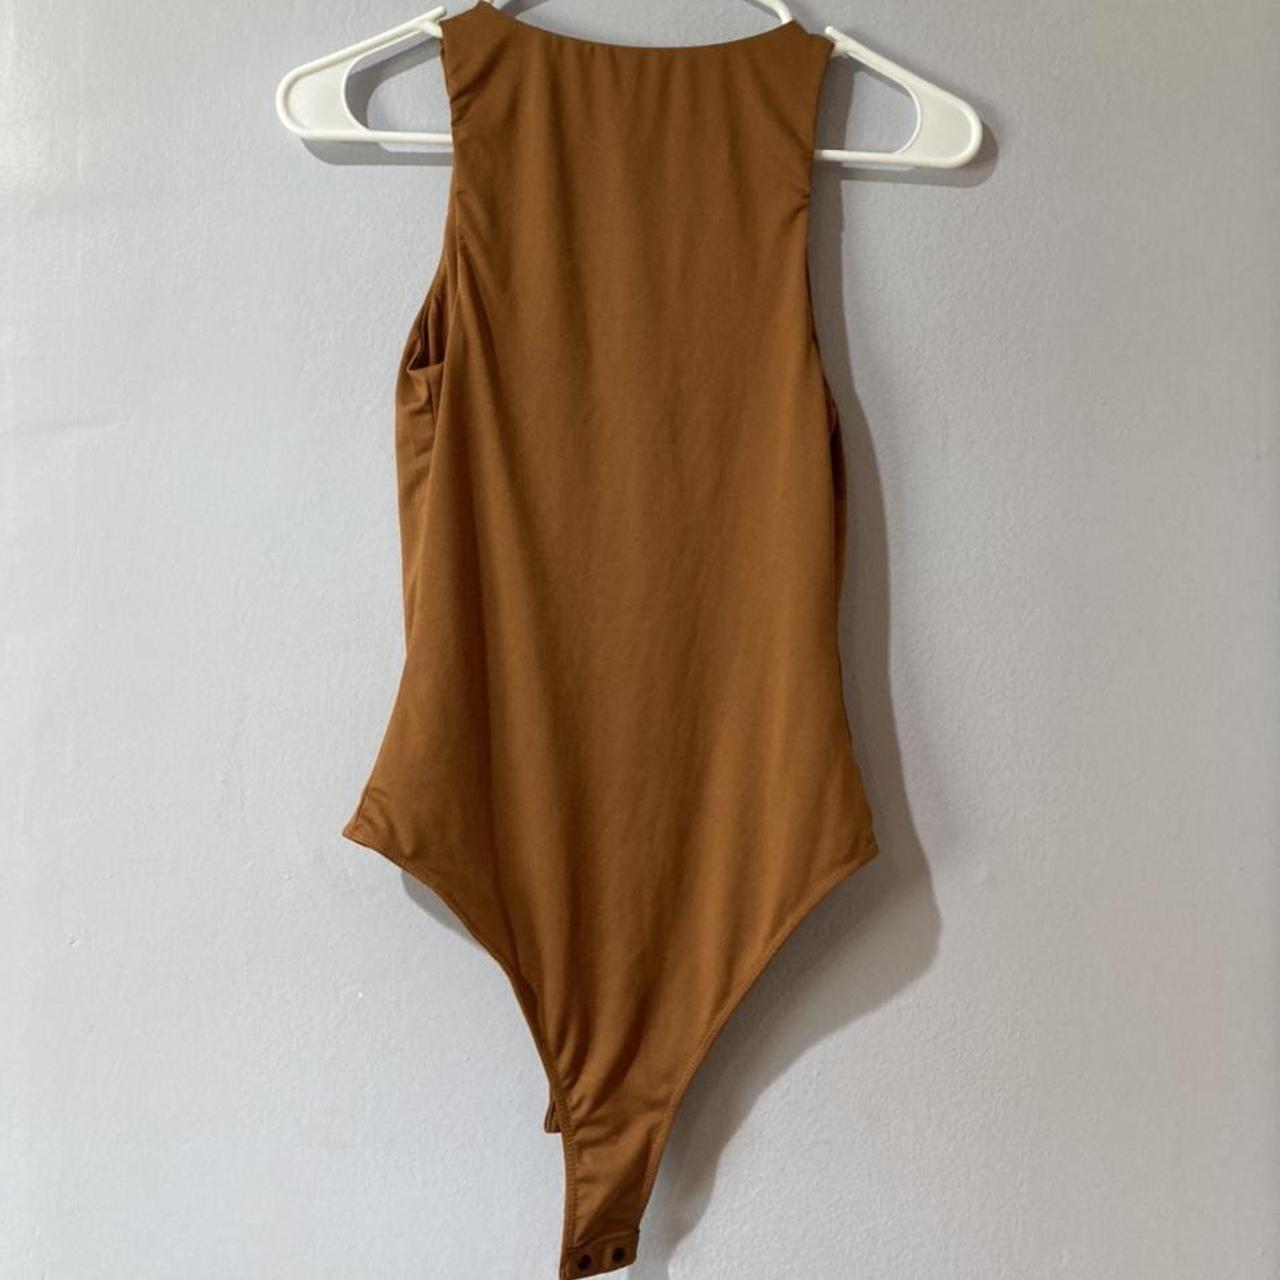 Product Image 2 - Caramel Smooth Bodysuit 

Size: XS